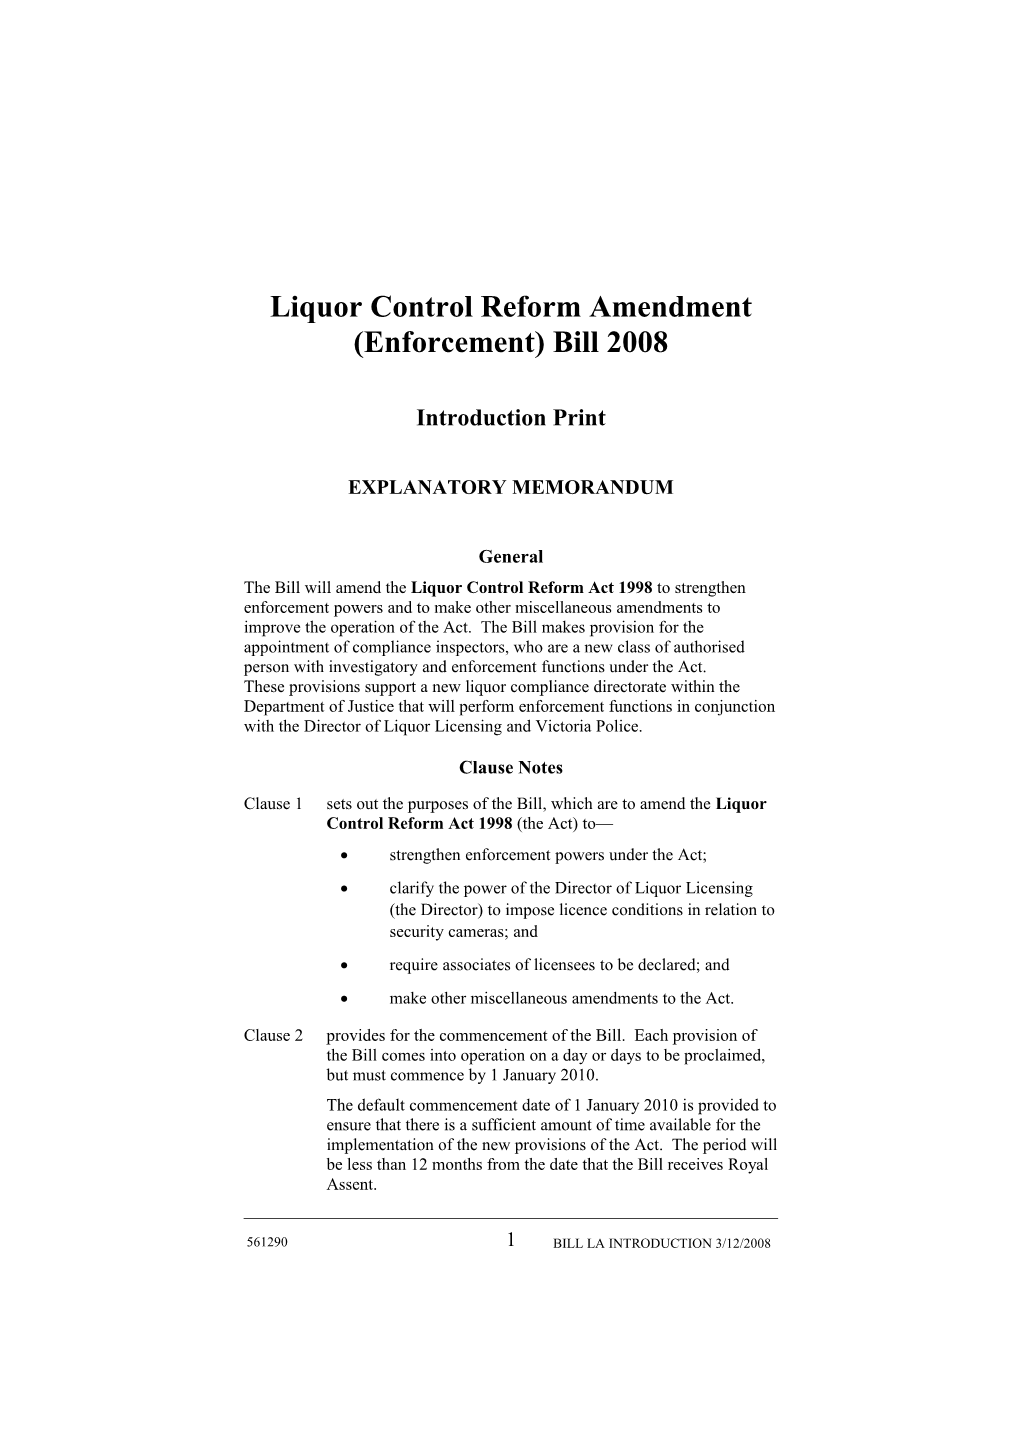 Liquor Control Reform Amendment (Enforcement) Bill 2008